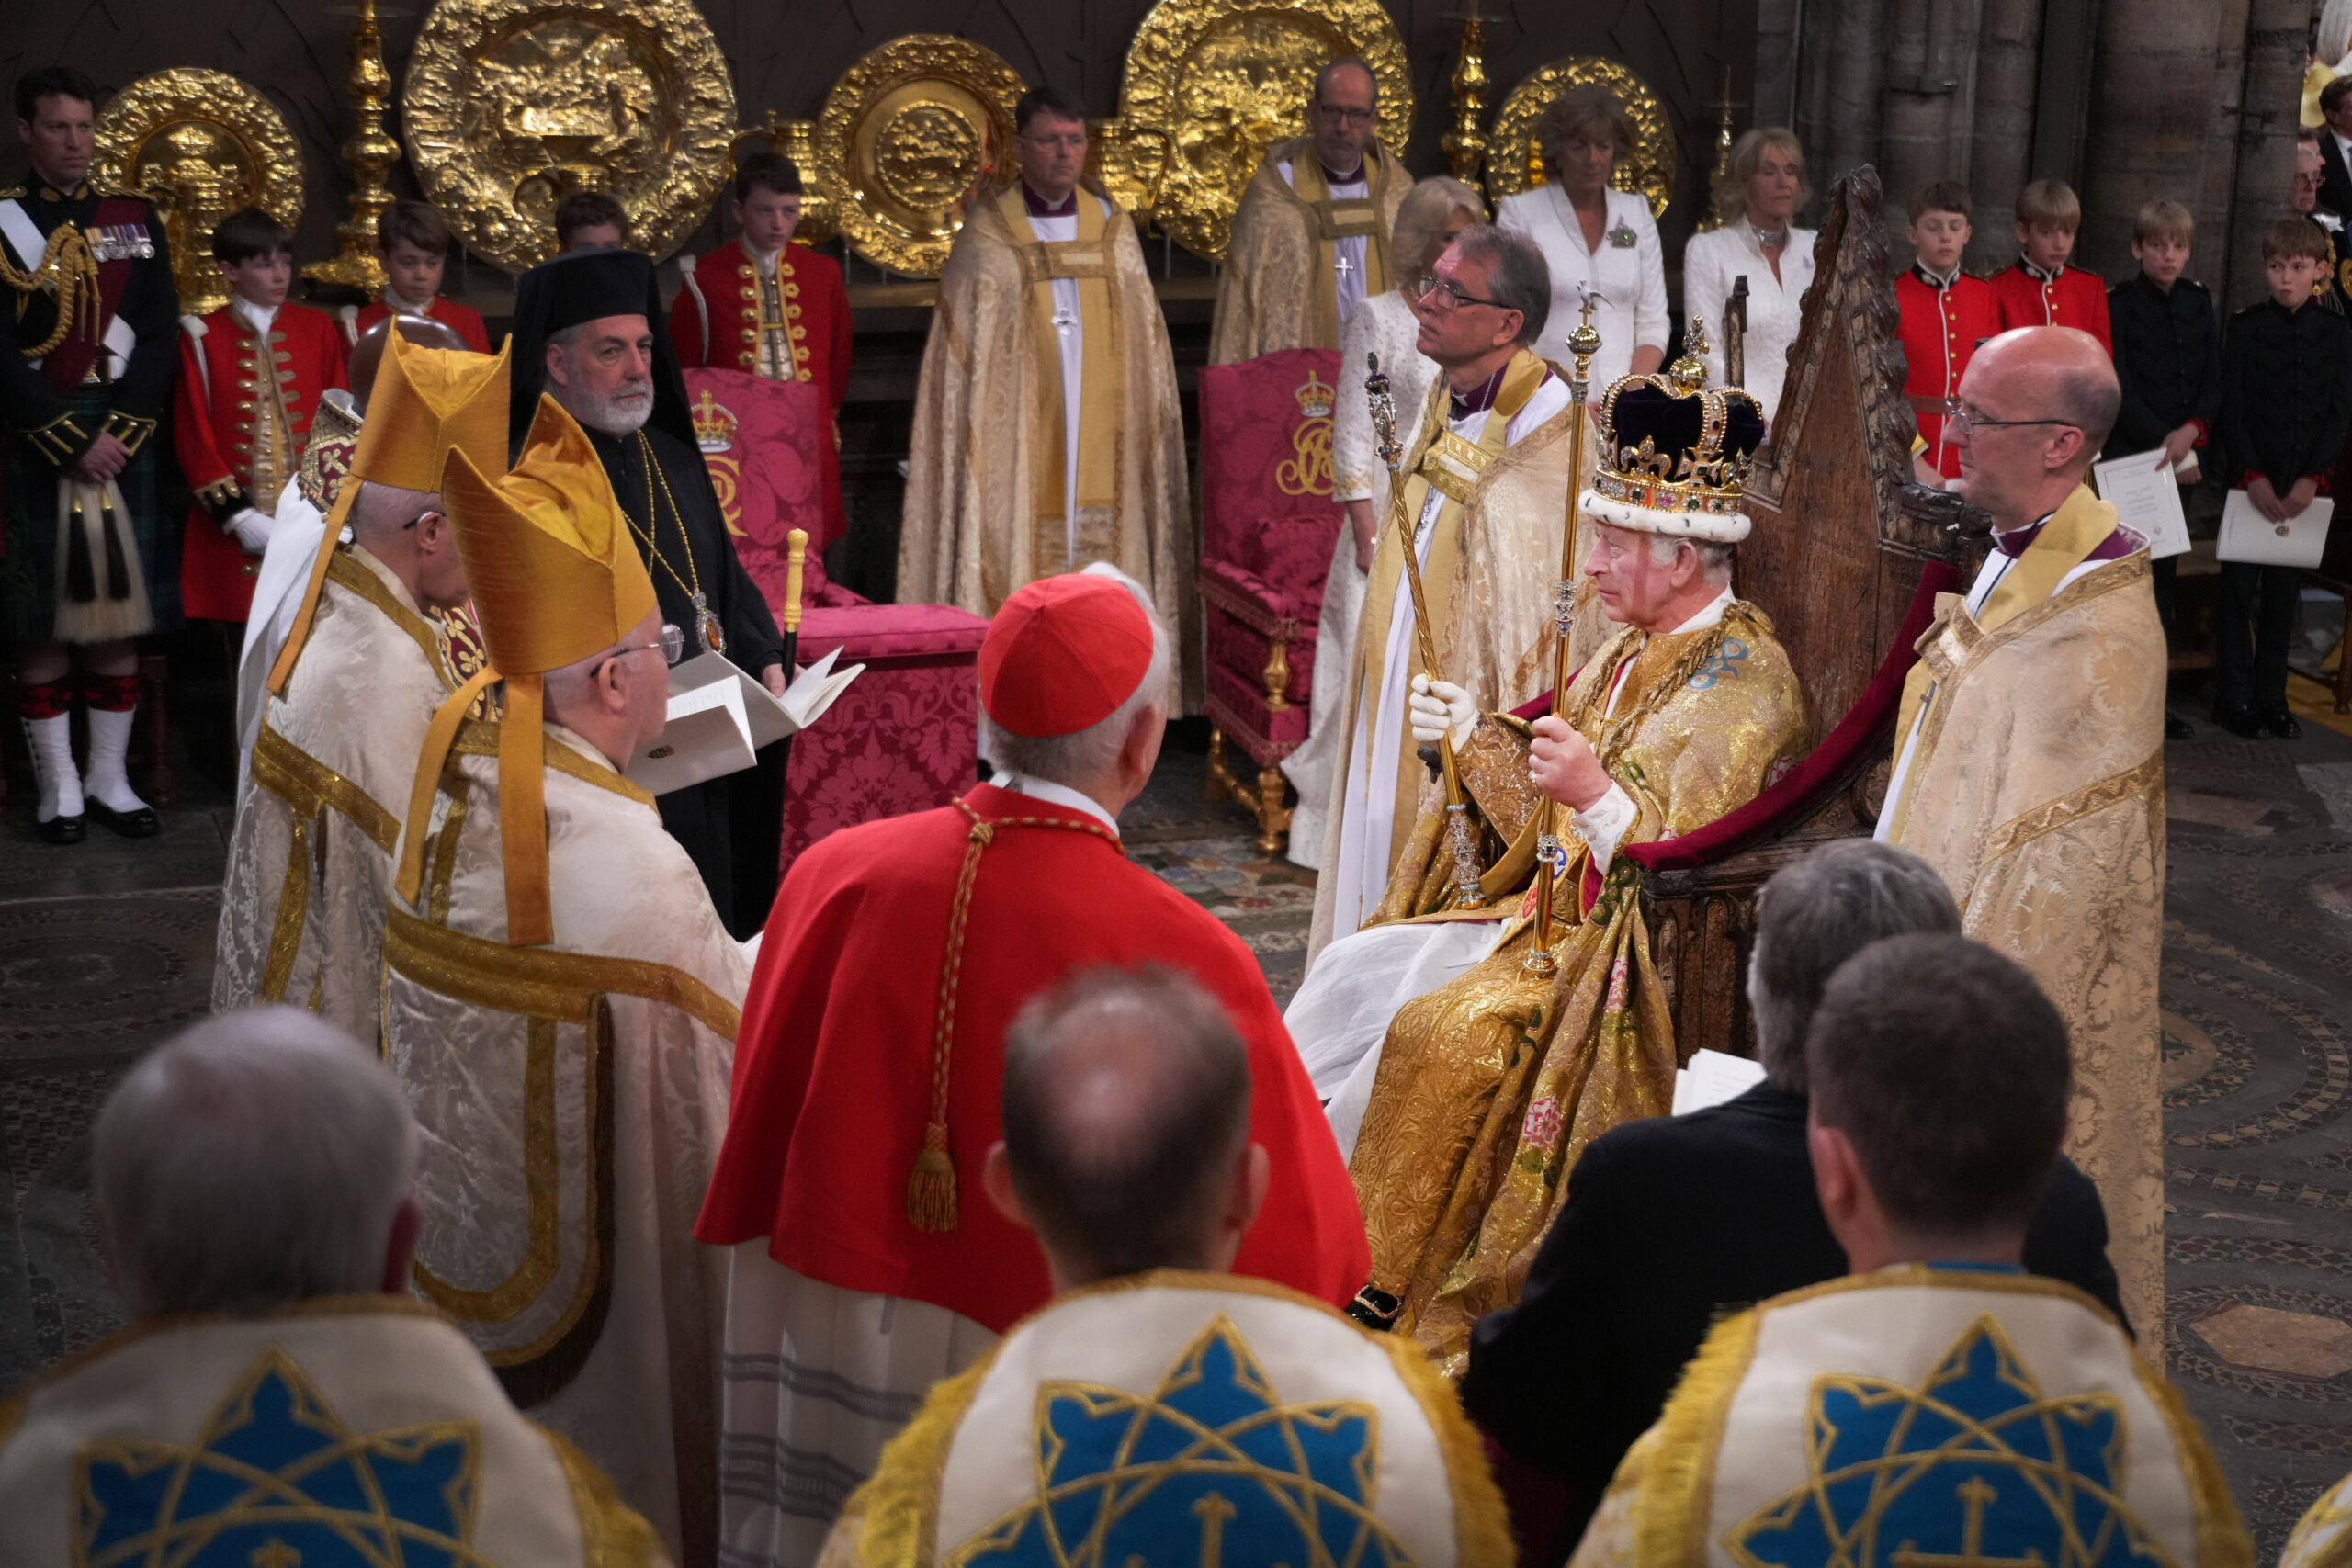 Le roi Charles III, portant la couronne de saint Édouard, entouré de chefs religieux lors de la cérémonie de son couronnement à l'abbaye de Westminster, à Londres. © Victoria Jones/PA Wire/George Rogers/WPA-Pool/SIPA